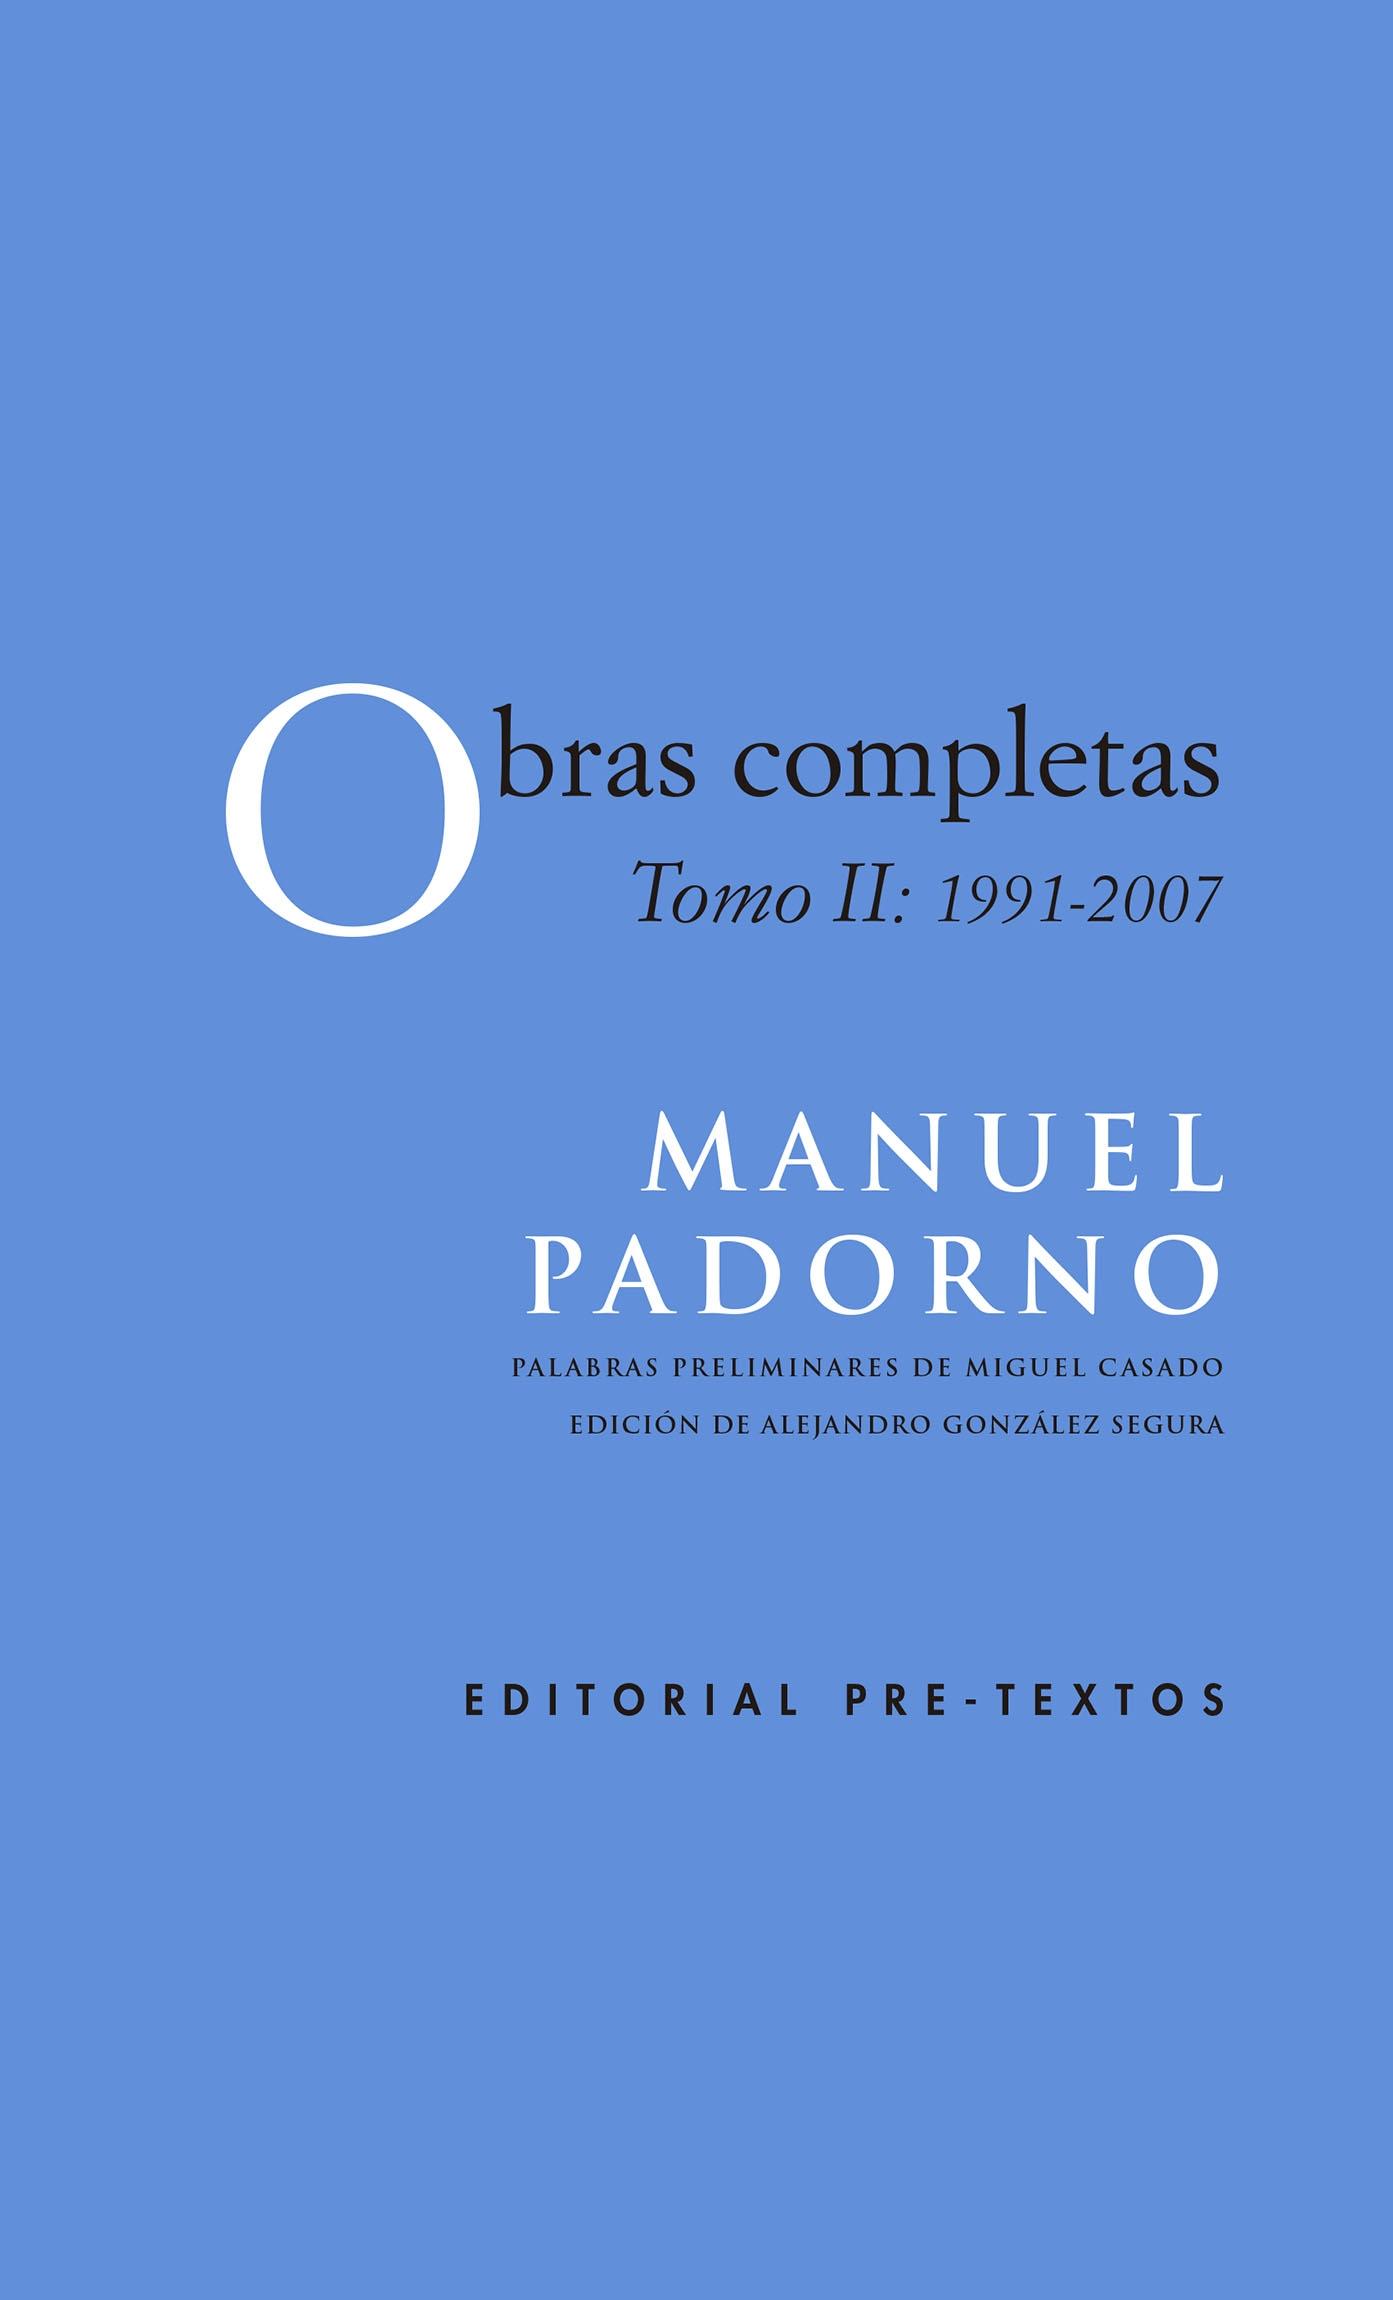 Obras Completas "Tomo Ii: 1991-2007"